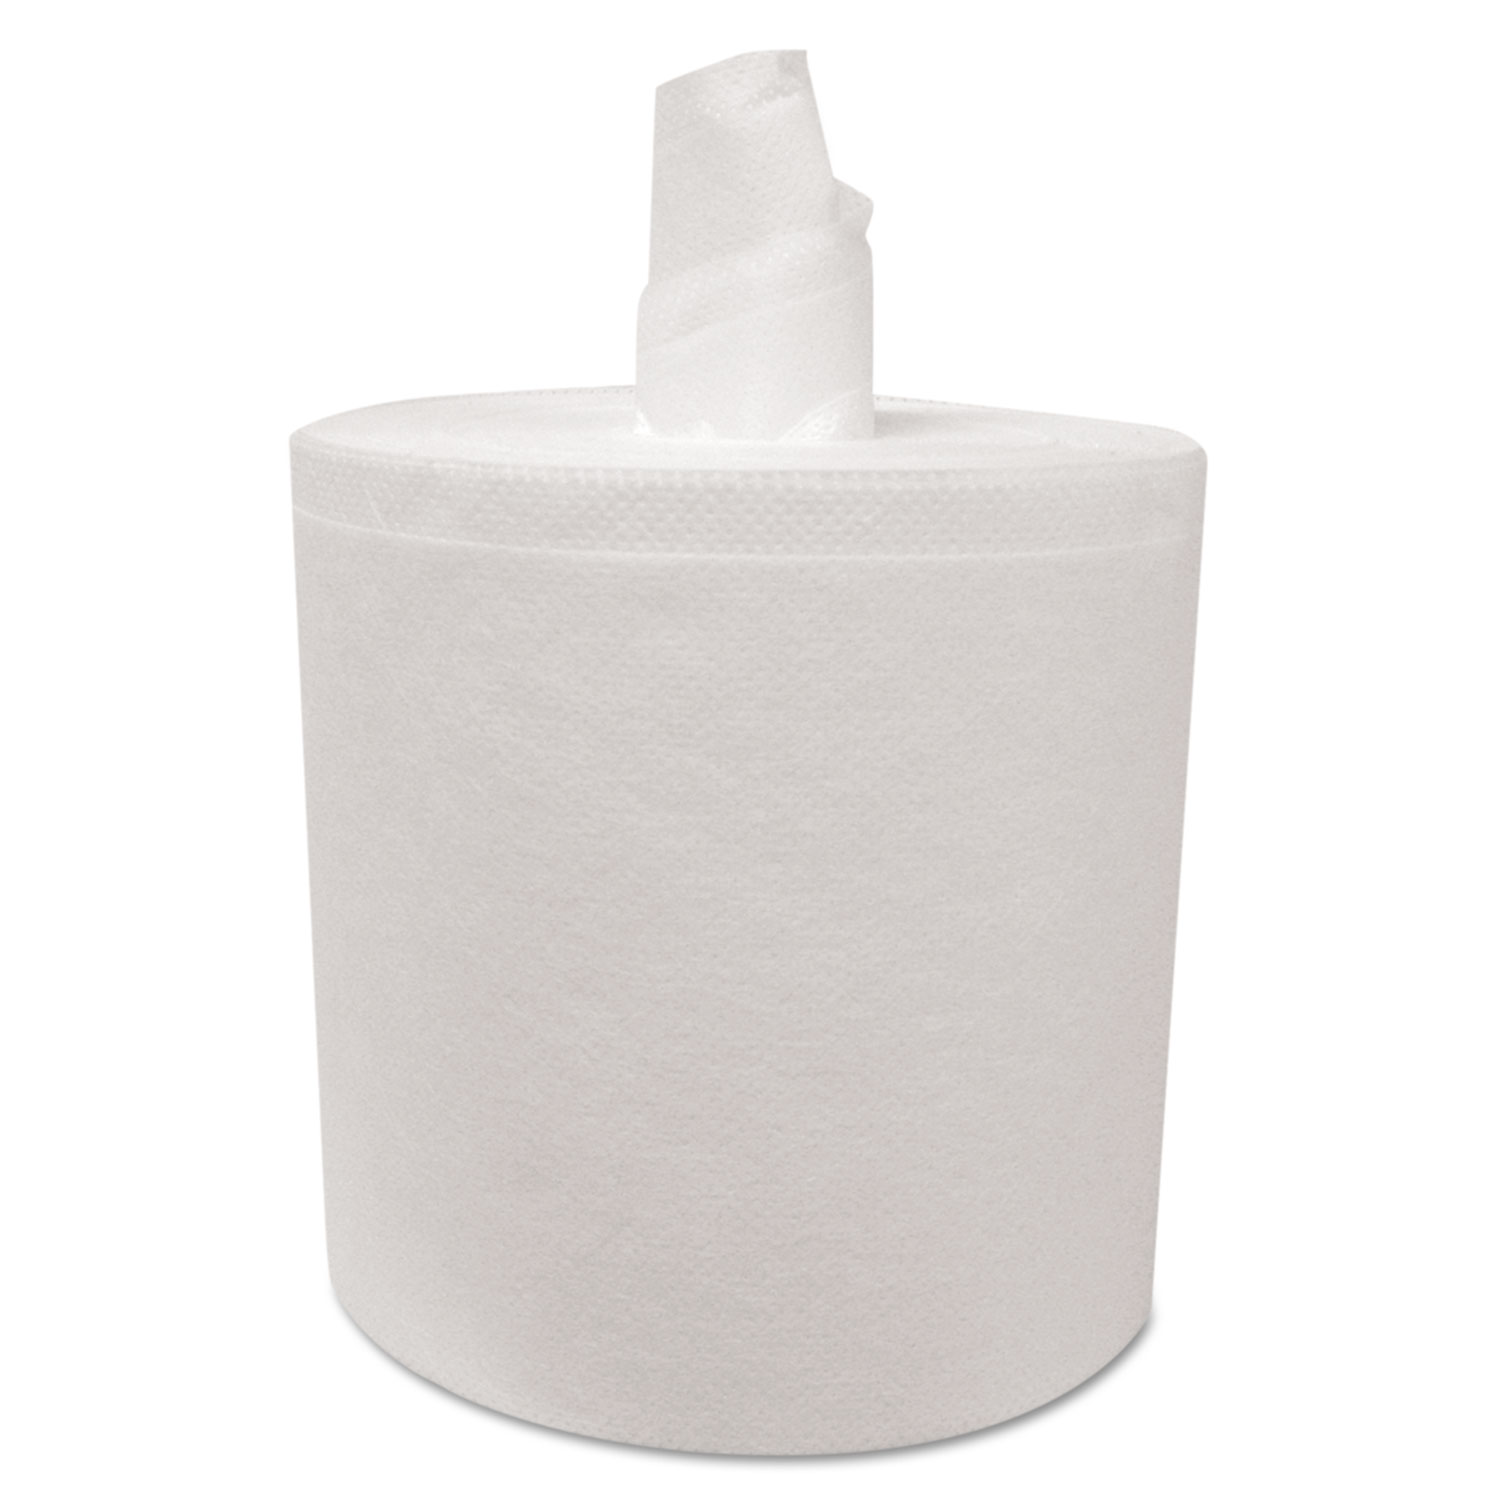 Tuff-Job Flex Wipes Wiper/Bucket System,12x12.5, White, 110/Roll, 6 Roll/Carton